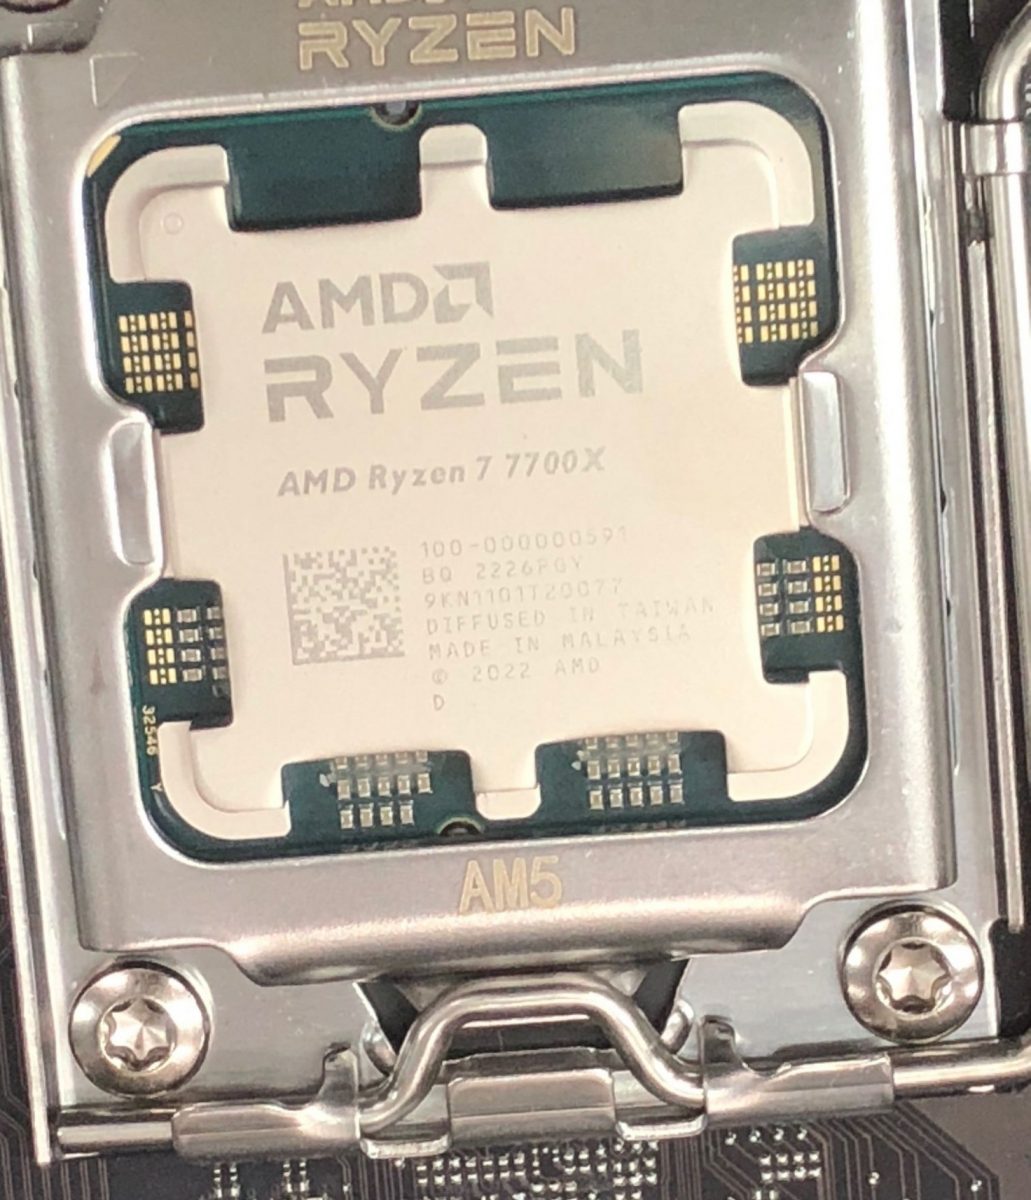 AMD Ryzen7 5800X 3D 8Core 16Threads 3.4-4.5Ghz l3 cache 96MB AMD 3D  Technology 